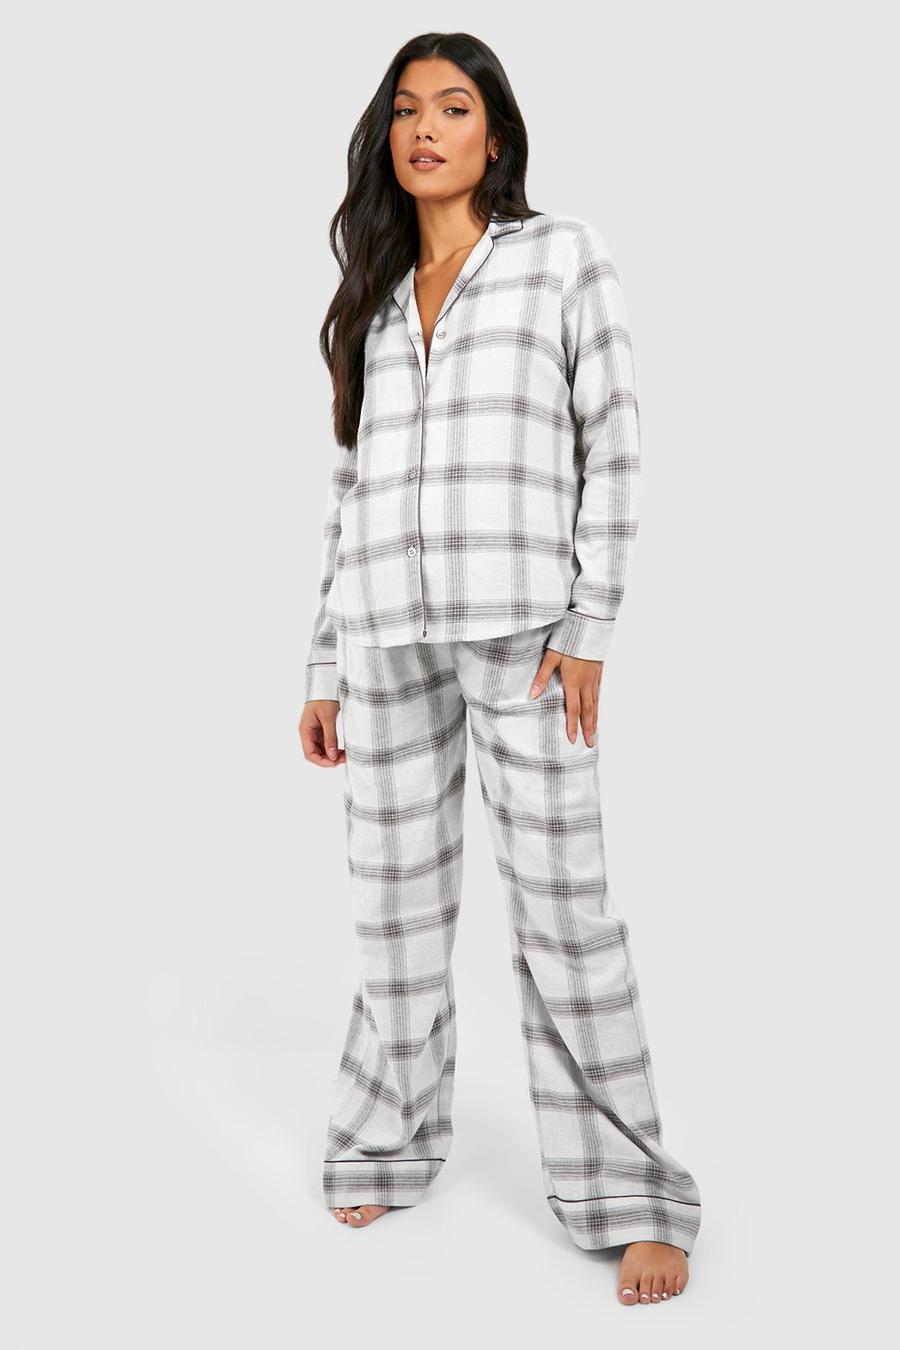 Pijama Premamá de cuadros cardados con botones, Cream bianco